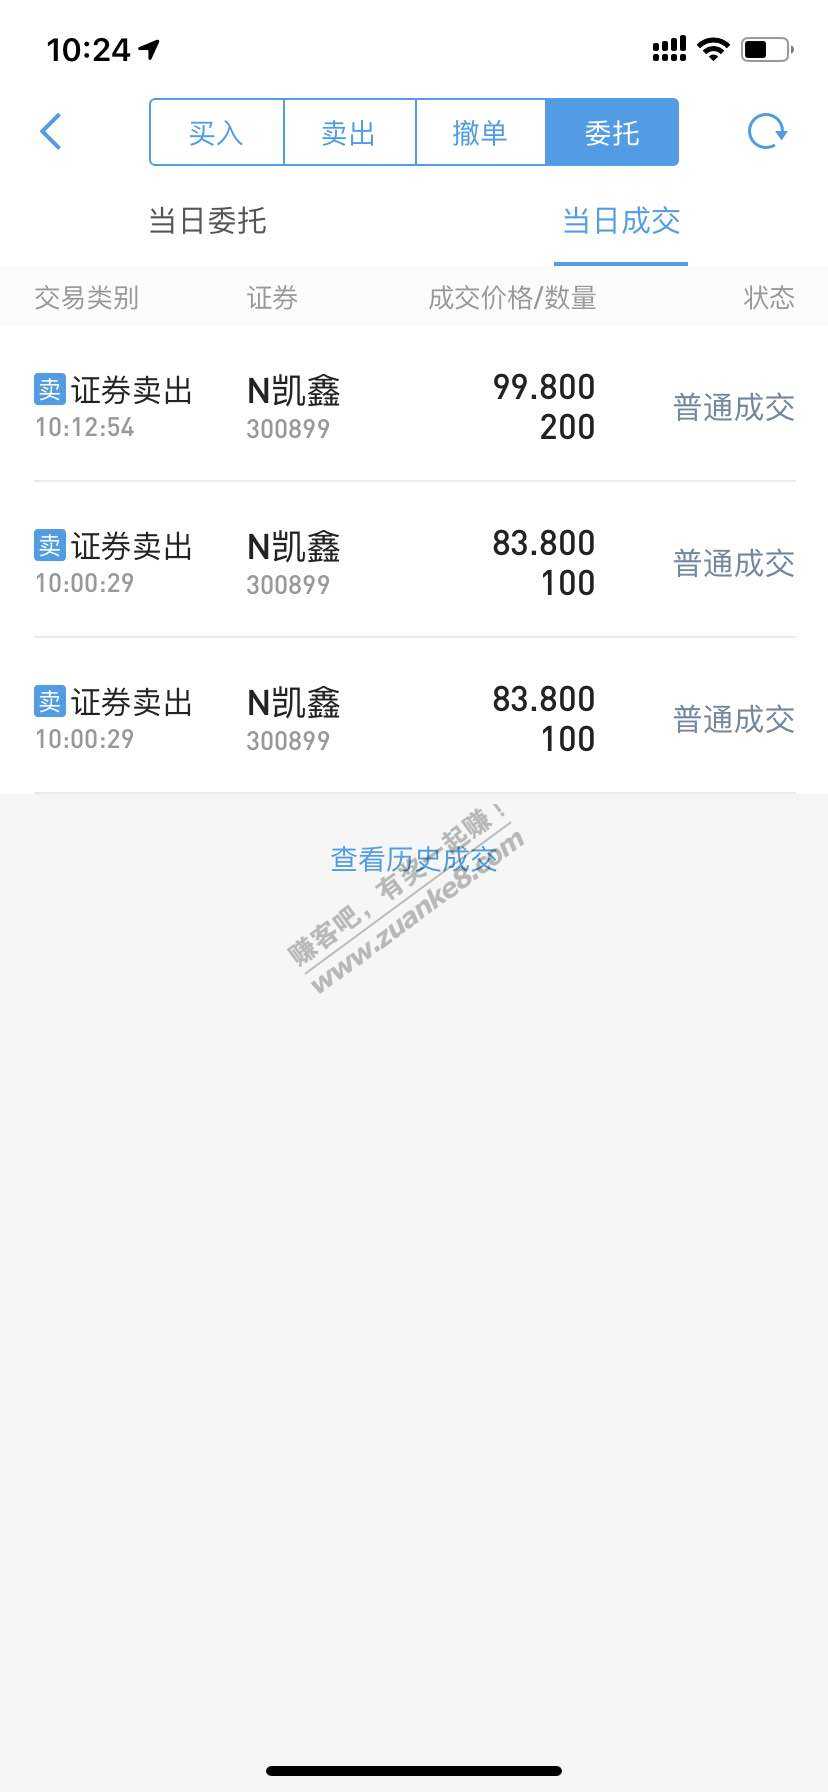 中签真爽啊-N凯鑫-留了100股做纪念-100以上再卖-惠小助(52huixz.com)